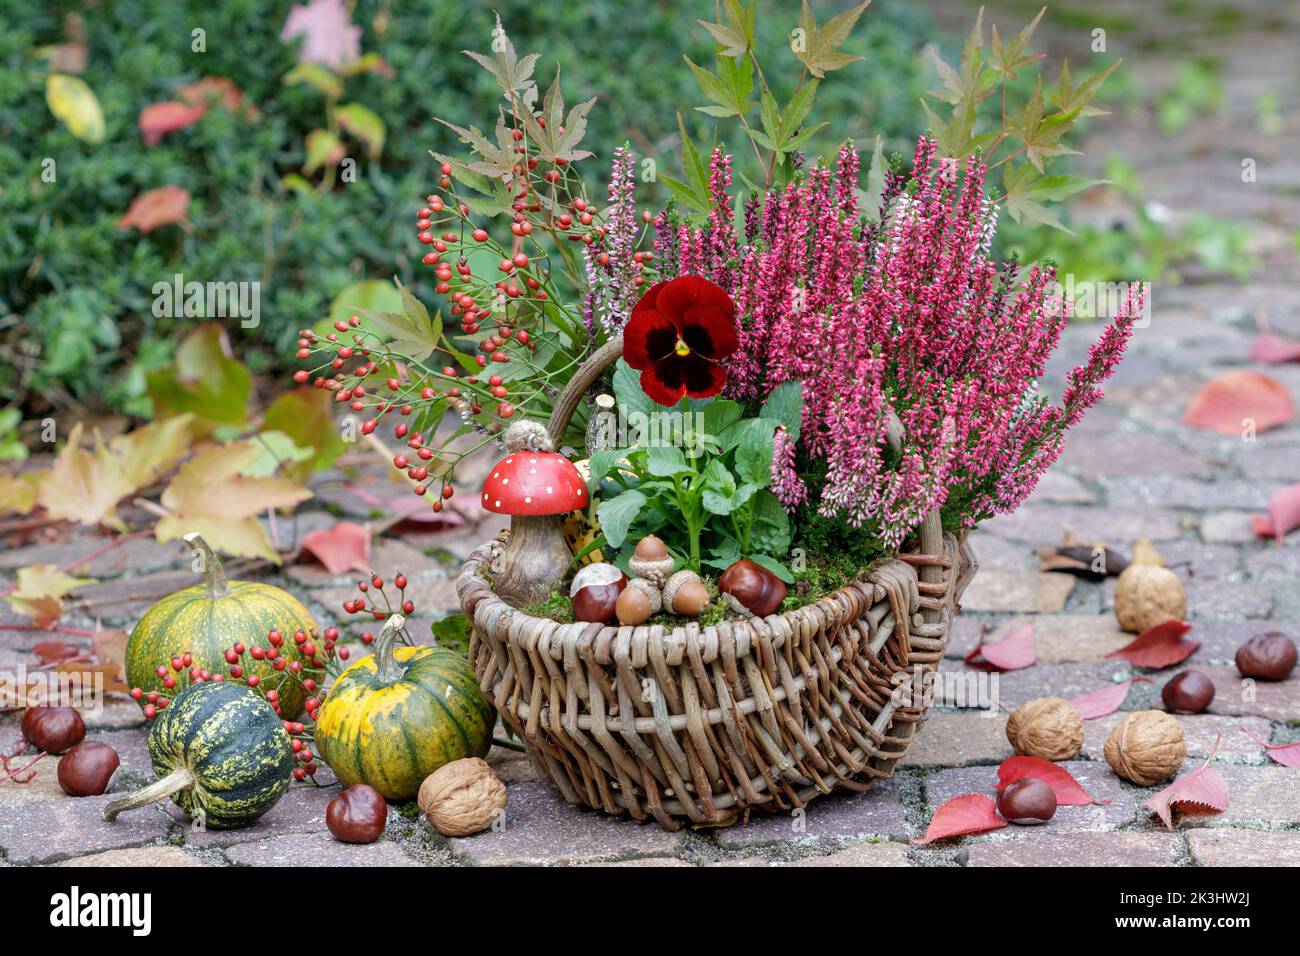 fiore di viola rossa e fiore di erica in cesto in giardino autunnale Foto Stock